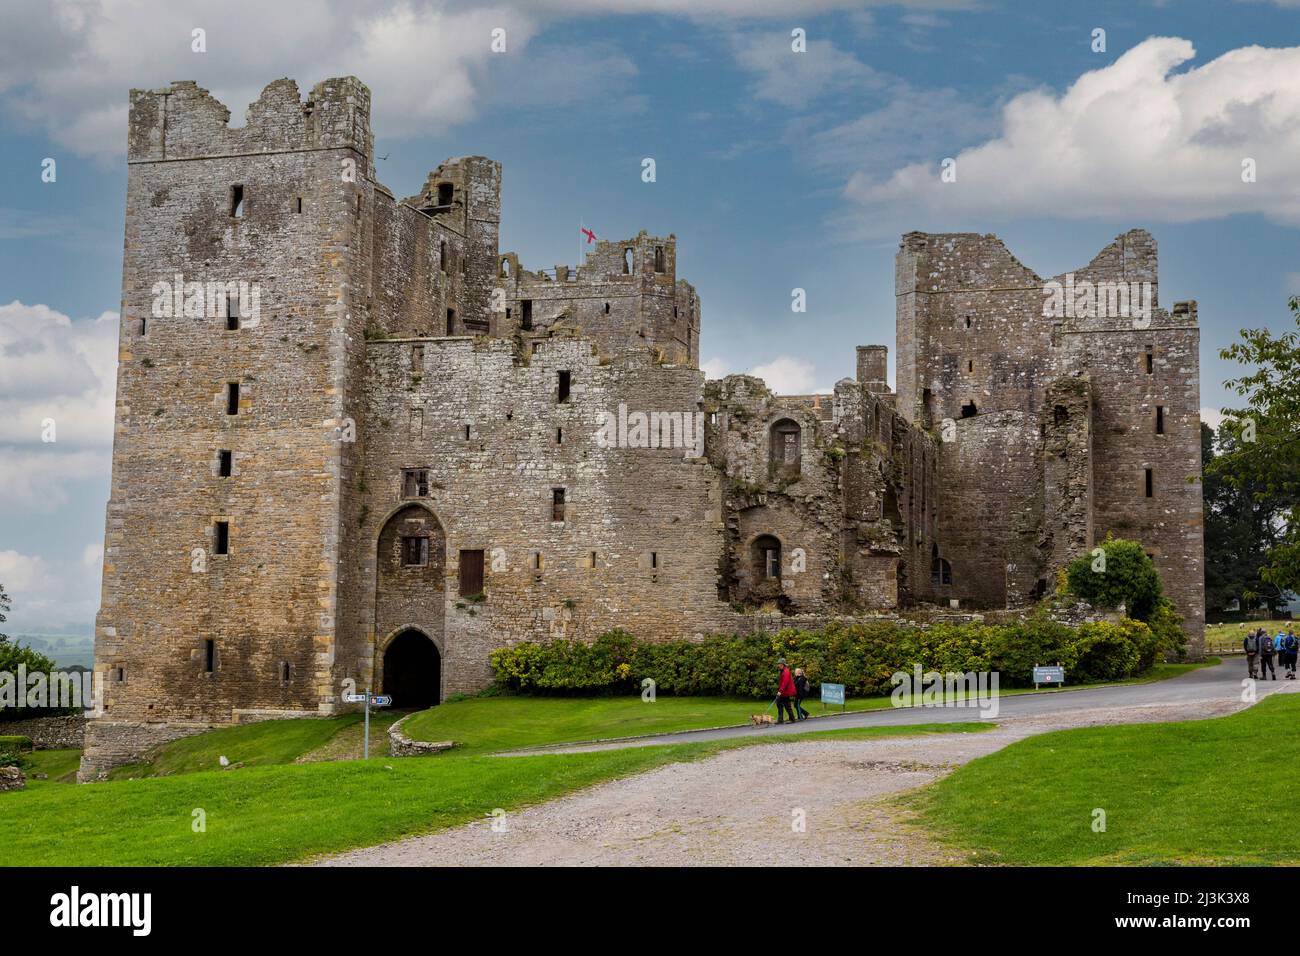 Reino Unido, Inglaterra, Yorkshire. Bolton Castle, acabado en 1399, donde la Reina María de Scots fue encarcelado varios meses en 1568-69. Foto de stock